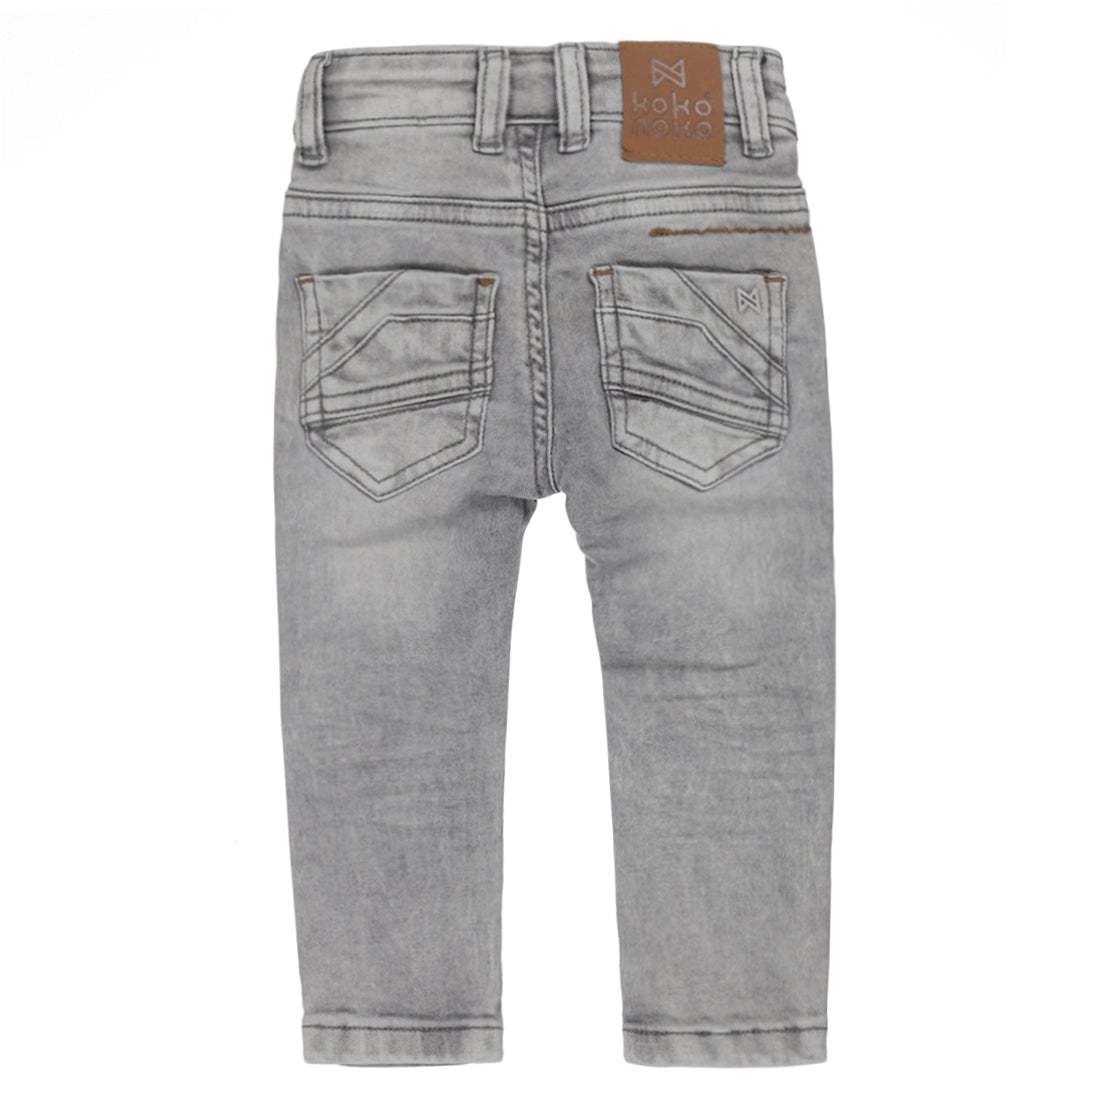 Jongens Jeans van Koko Noko in de kleur Grey jeans in maat 128.